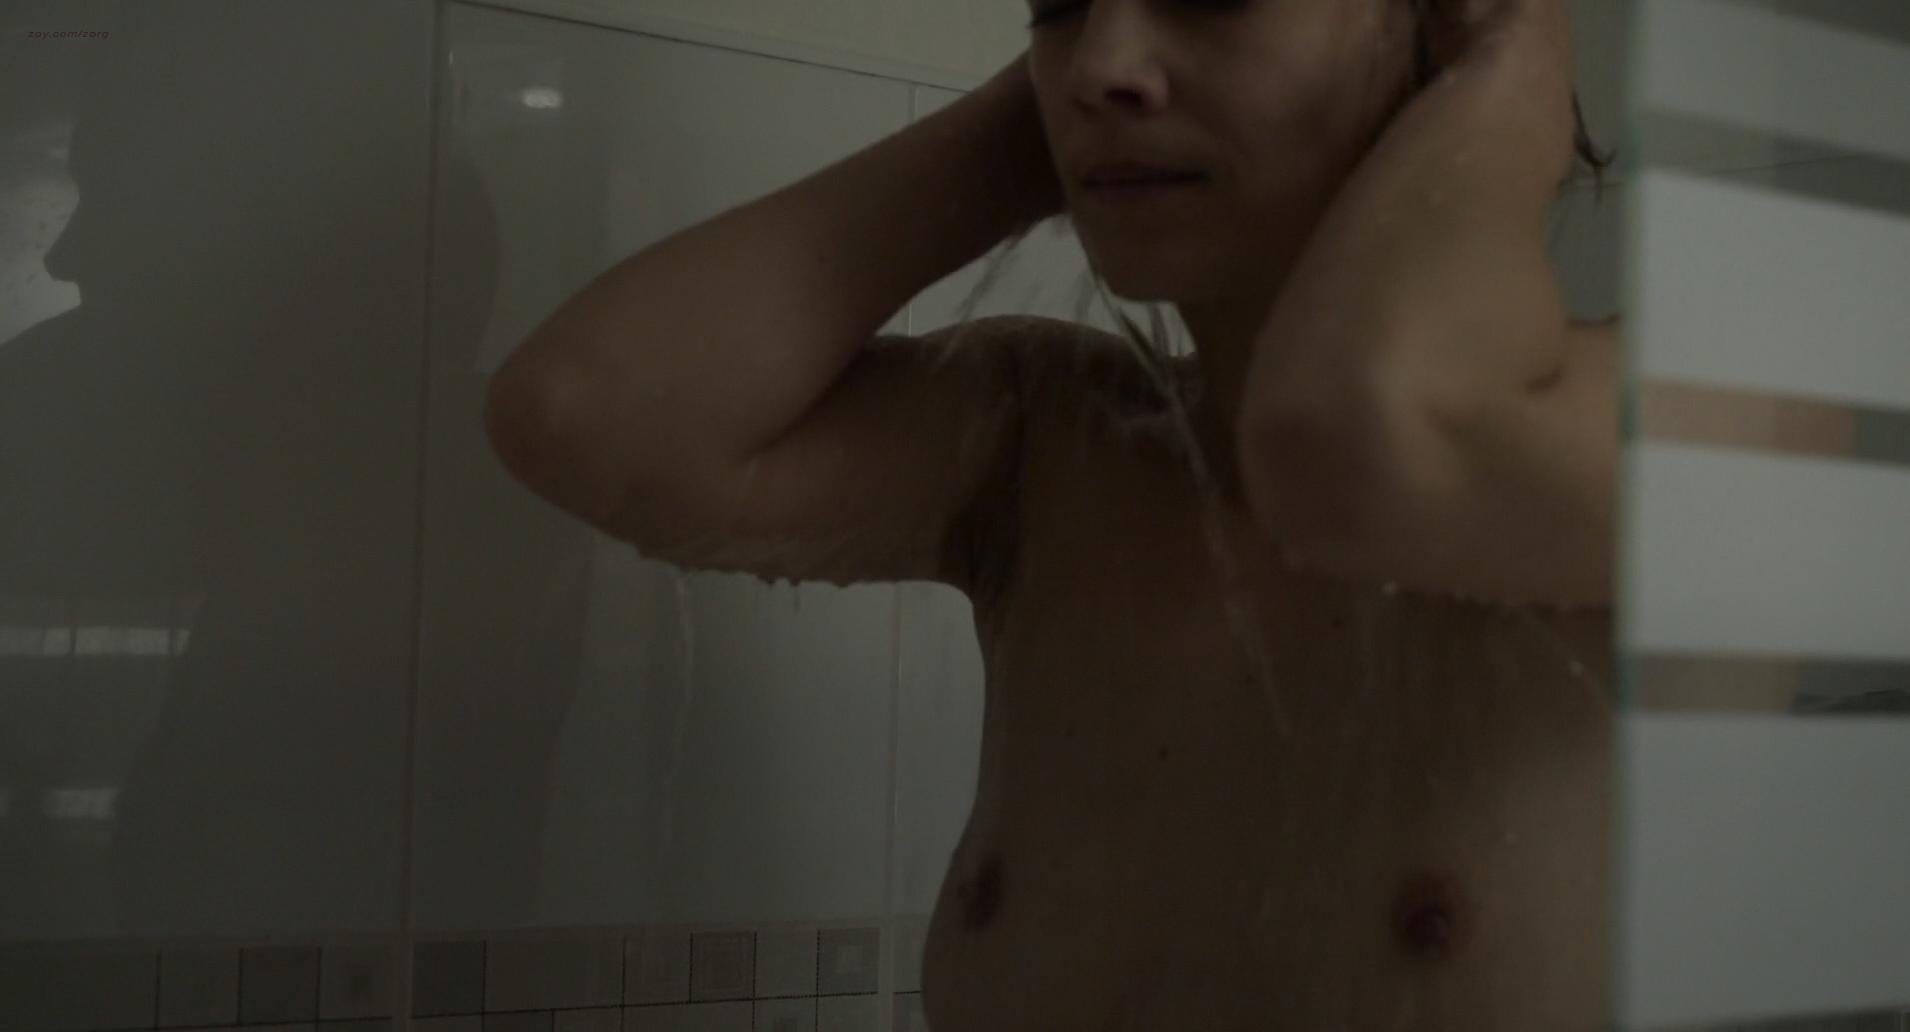 Nude Video Celebs Celine Sallette Nude Je Vous